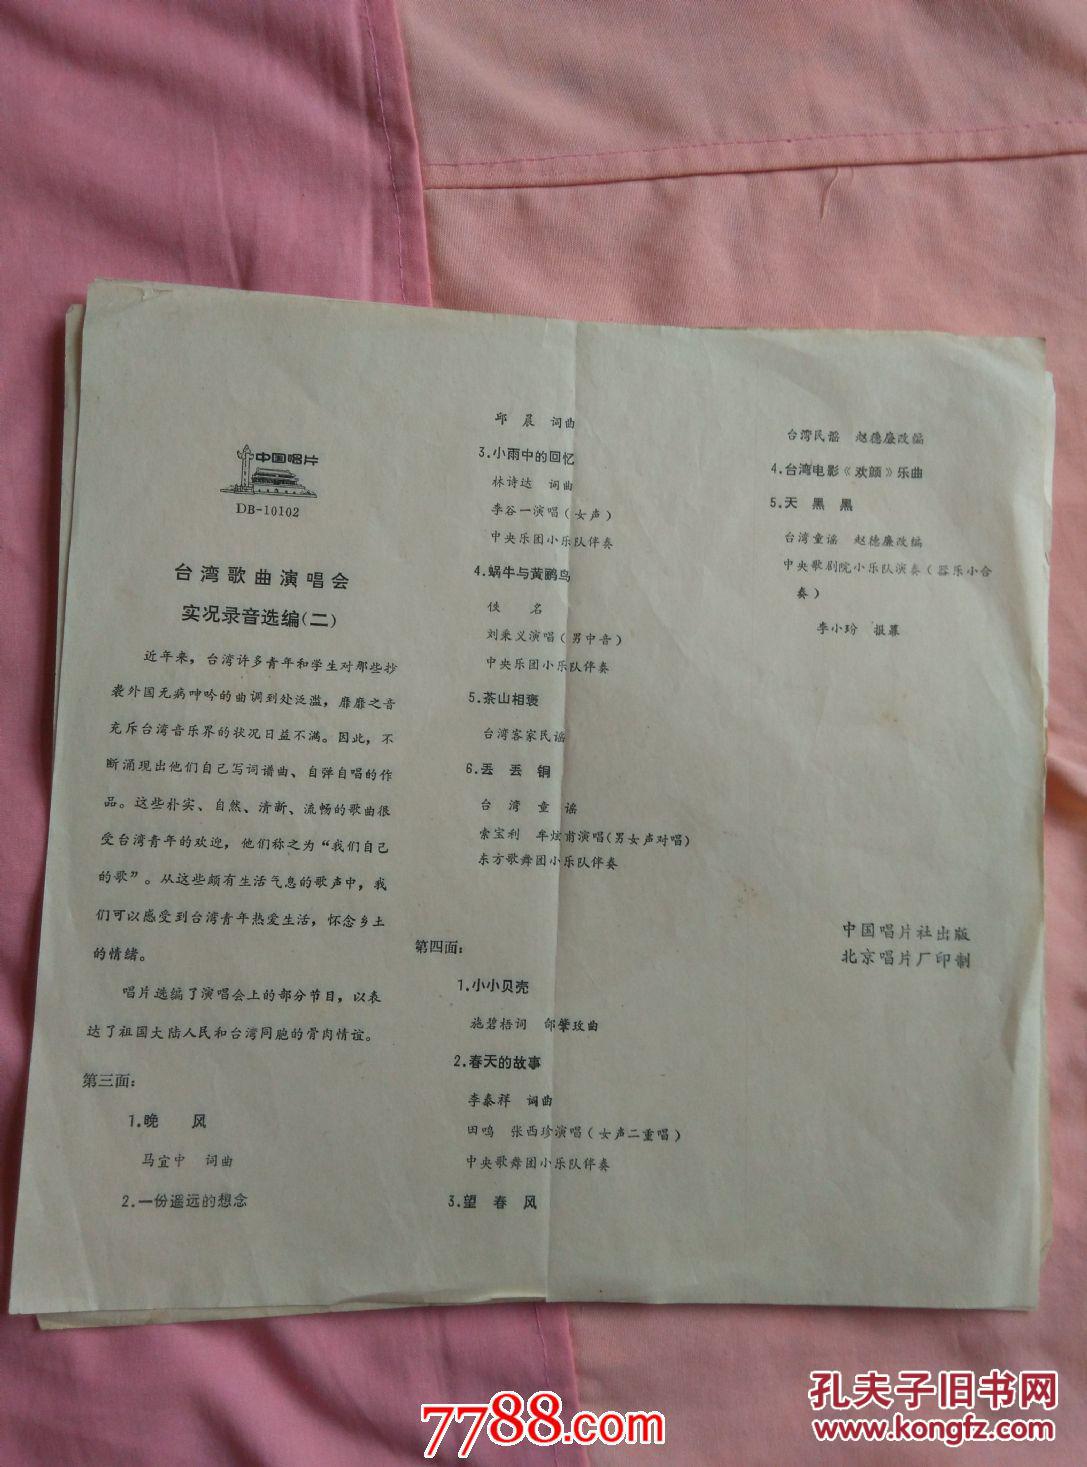 【图】大薄膜唱片歌词纸:台湾歌曲演唱会实况